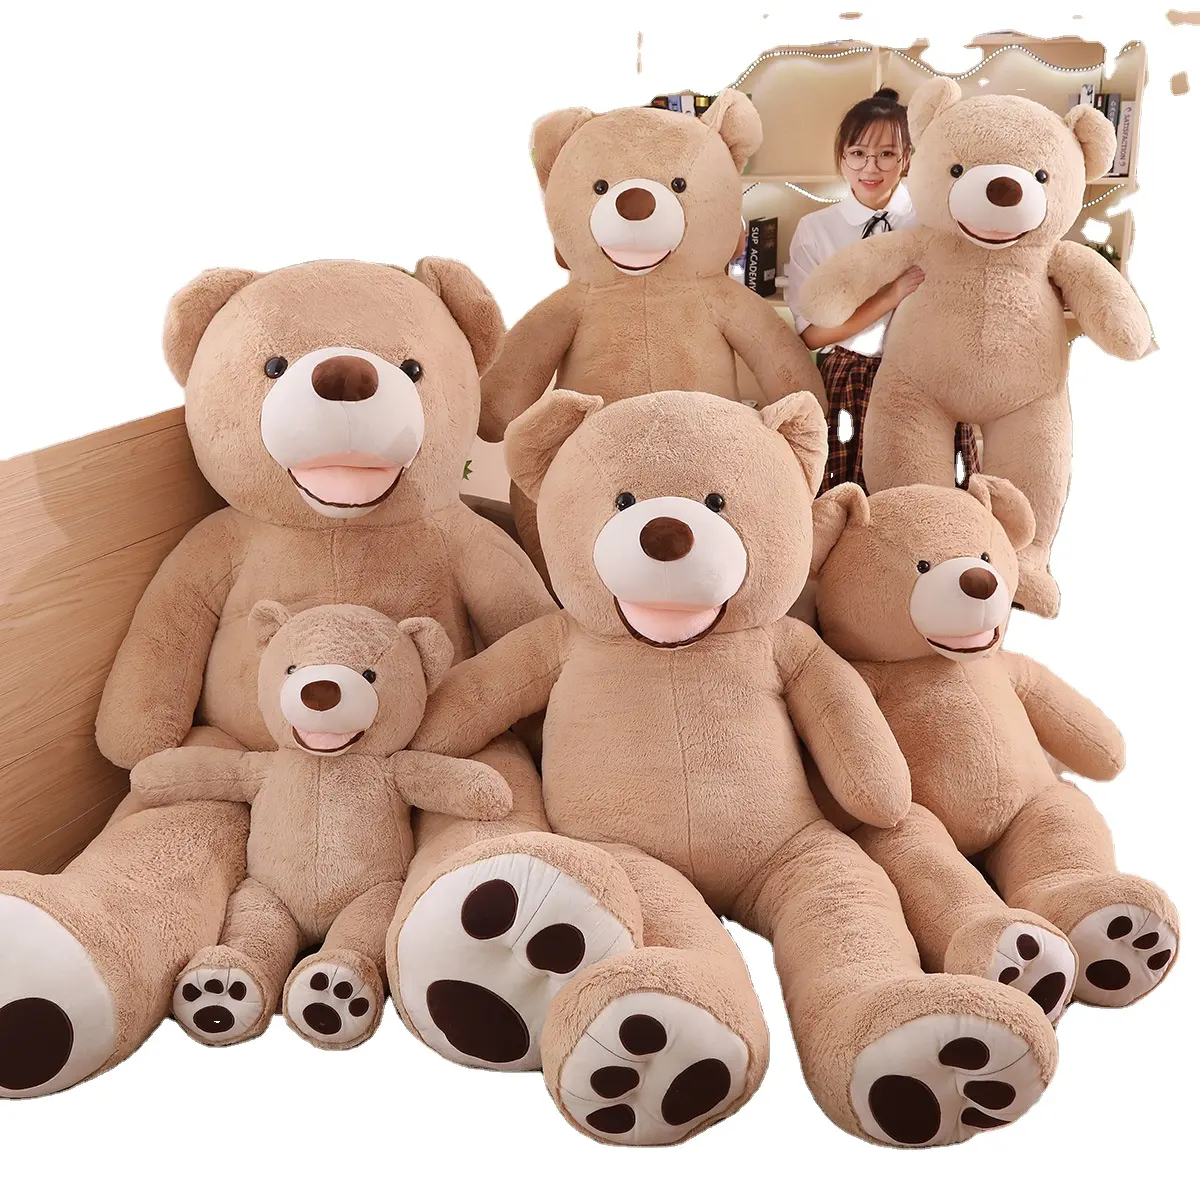 Precio al por mayor 40cm los Estados Unidos gran oso juguetes de peluche peluches gigante americano oso de peluche para niños regalo